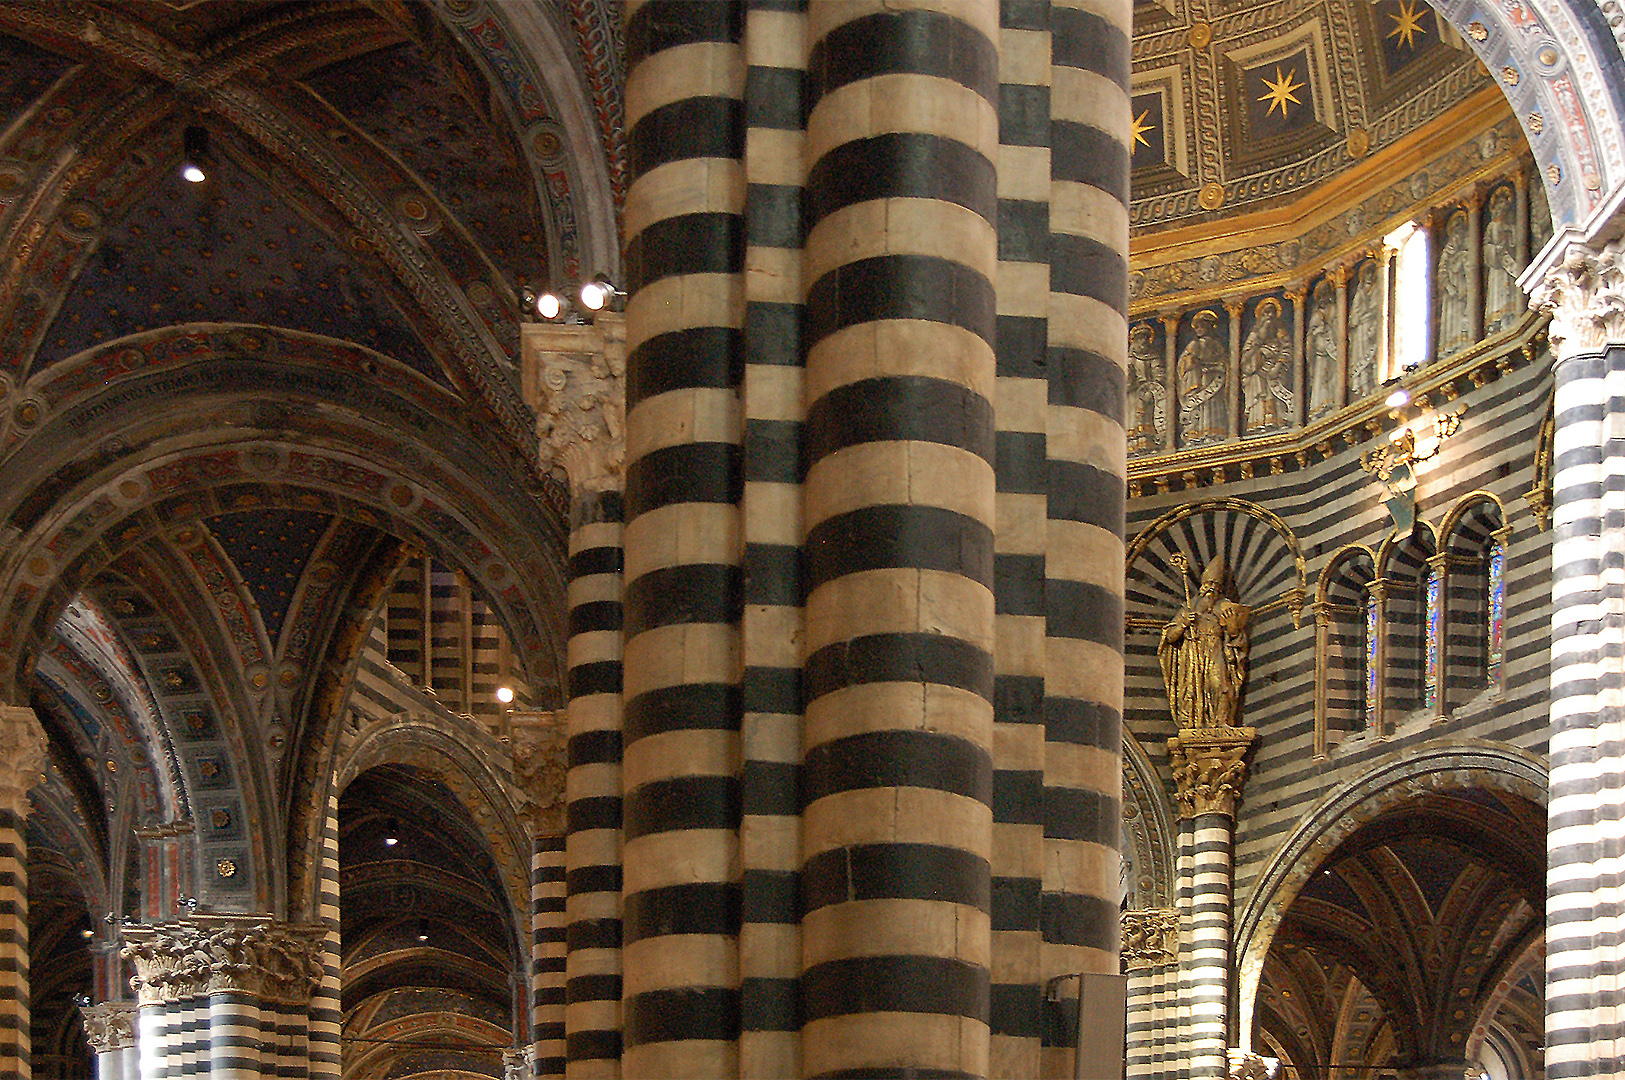 Interieur van de Dom van Siena, Toscane, Italië, Siena Cathedral, Tuscany, Italy